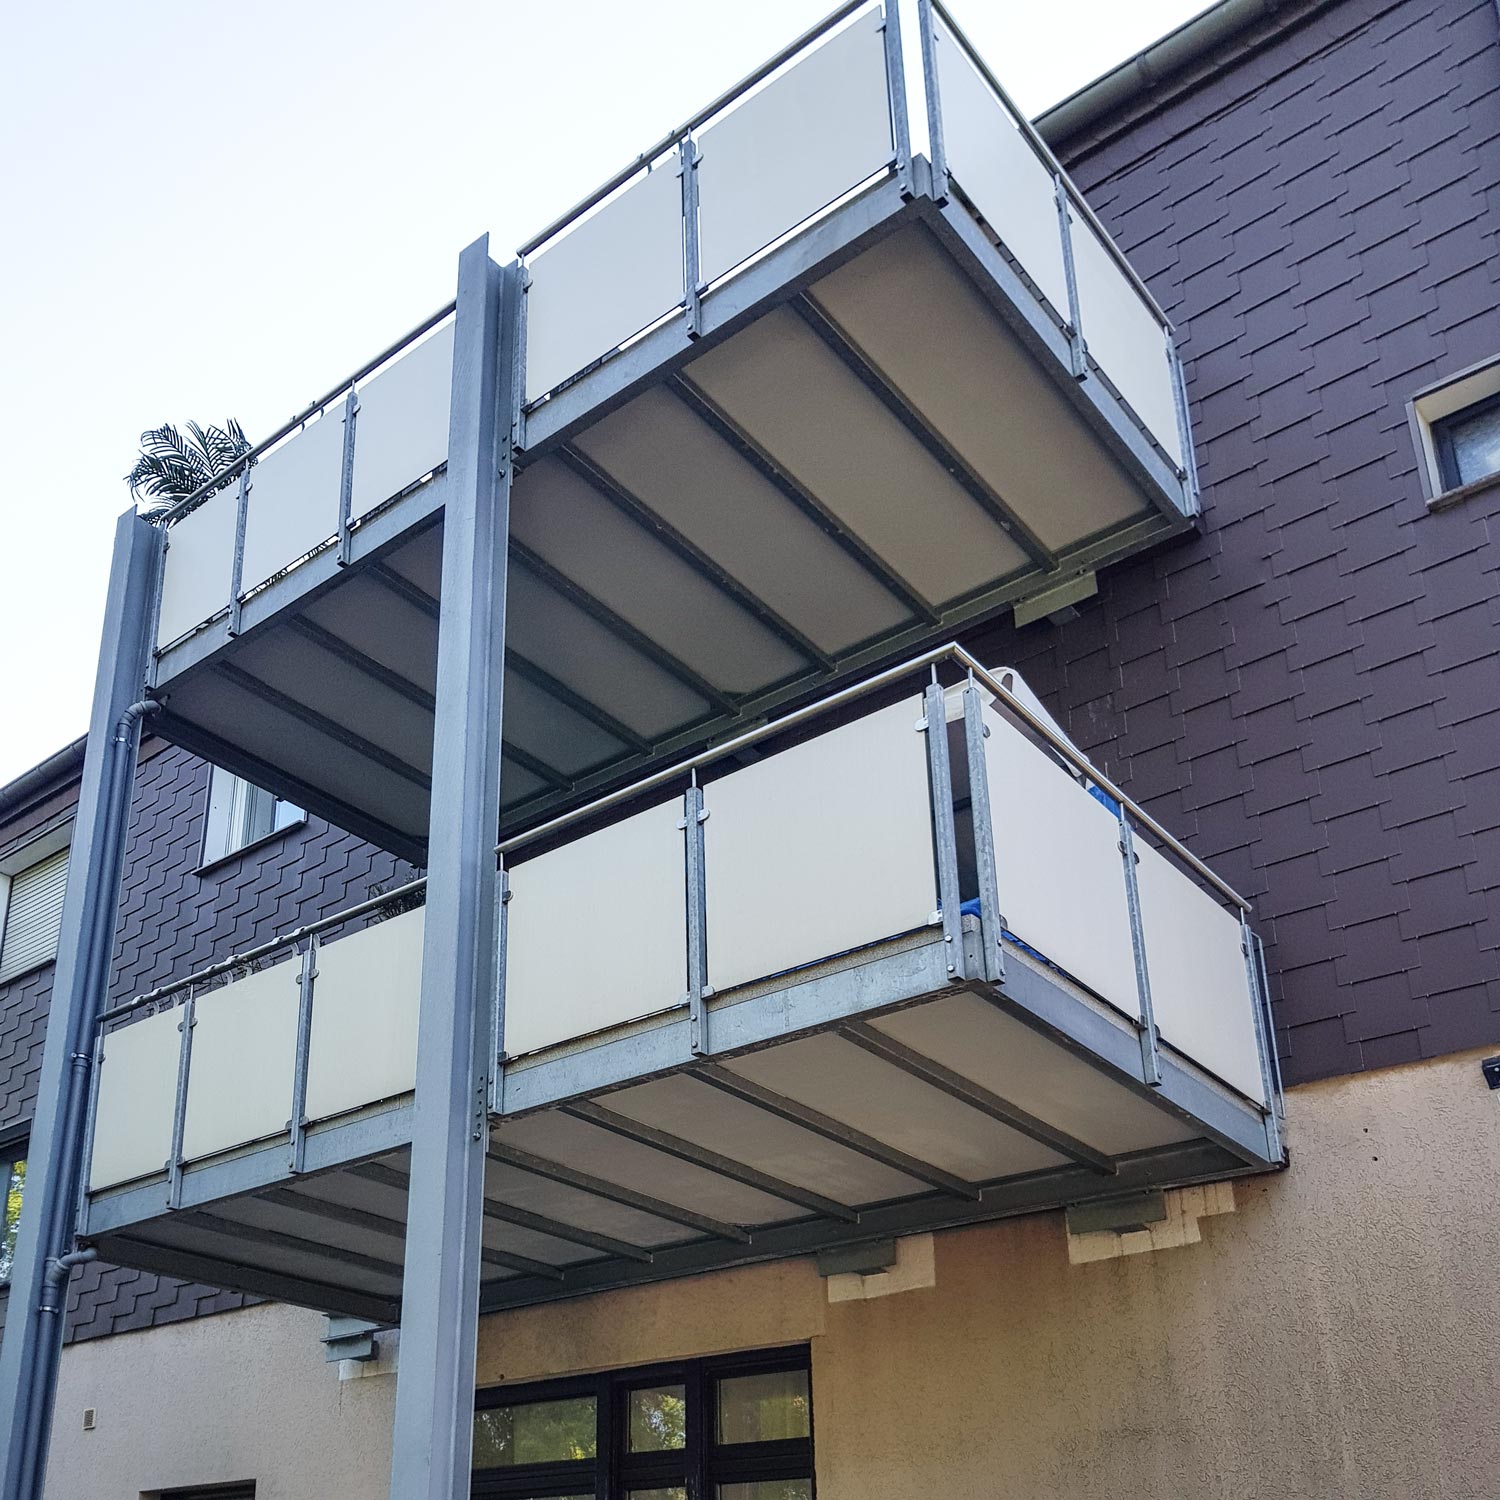 Neue Balkone in Oberhausen, geplant und realisiert von der Edelstahlschlosserei Nappenfeld aus Mühlheim